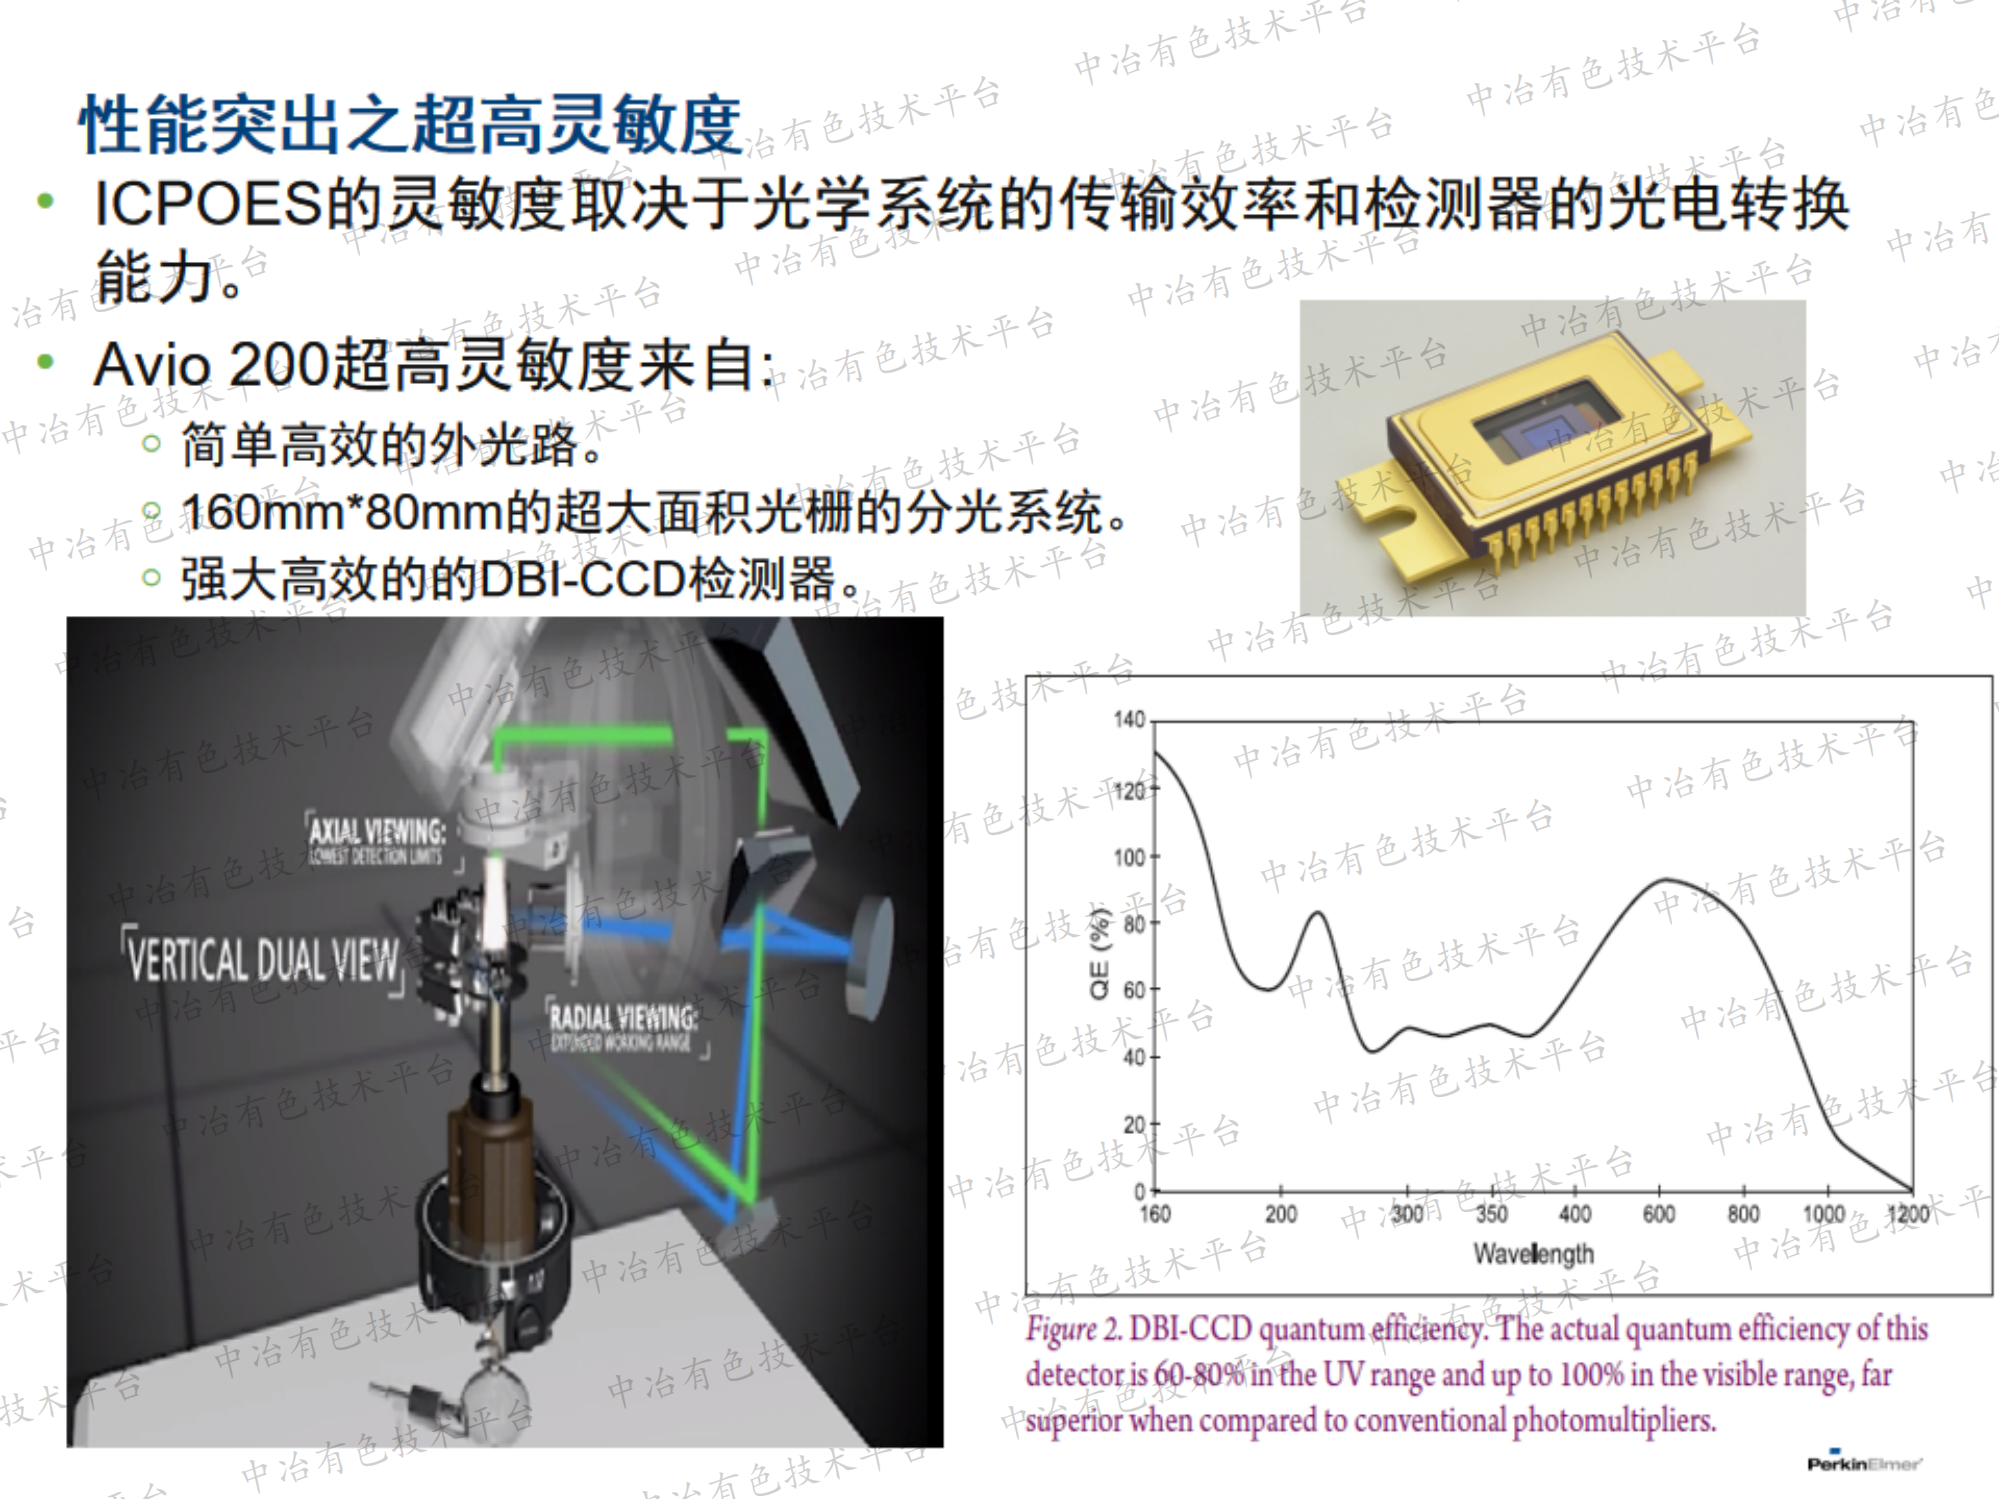 ICP-OES及ICP-MS在锂电池材料元素检测的应用